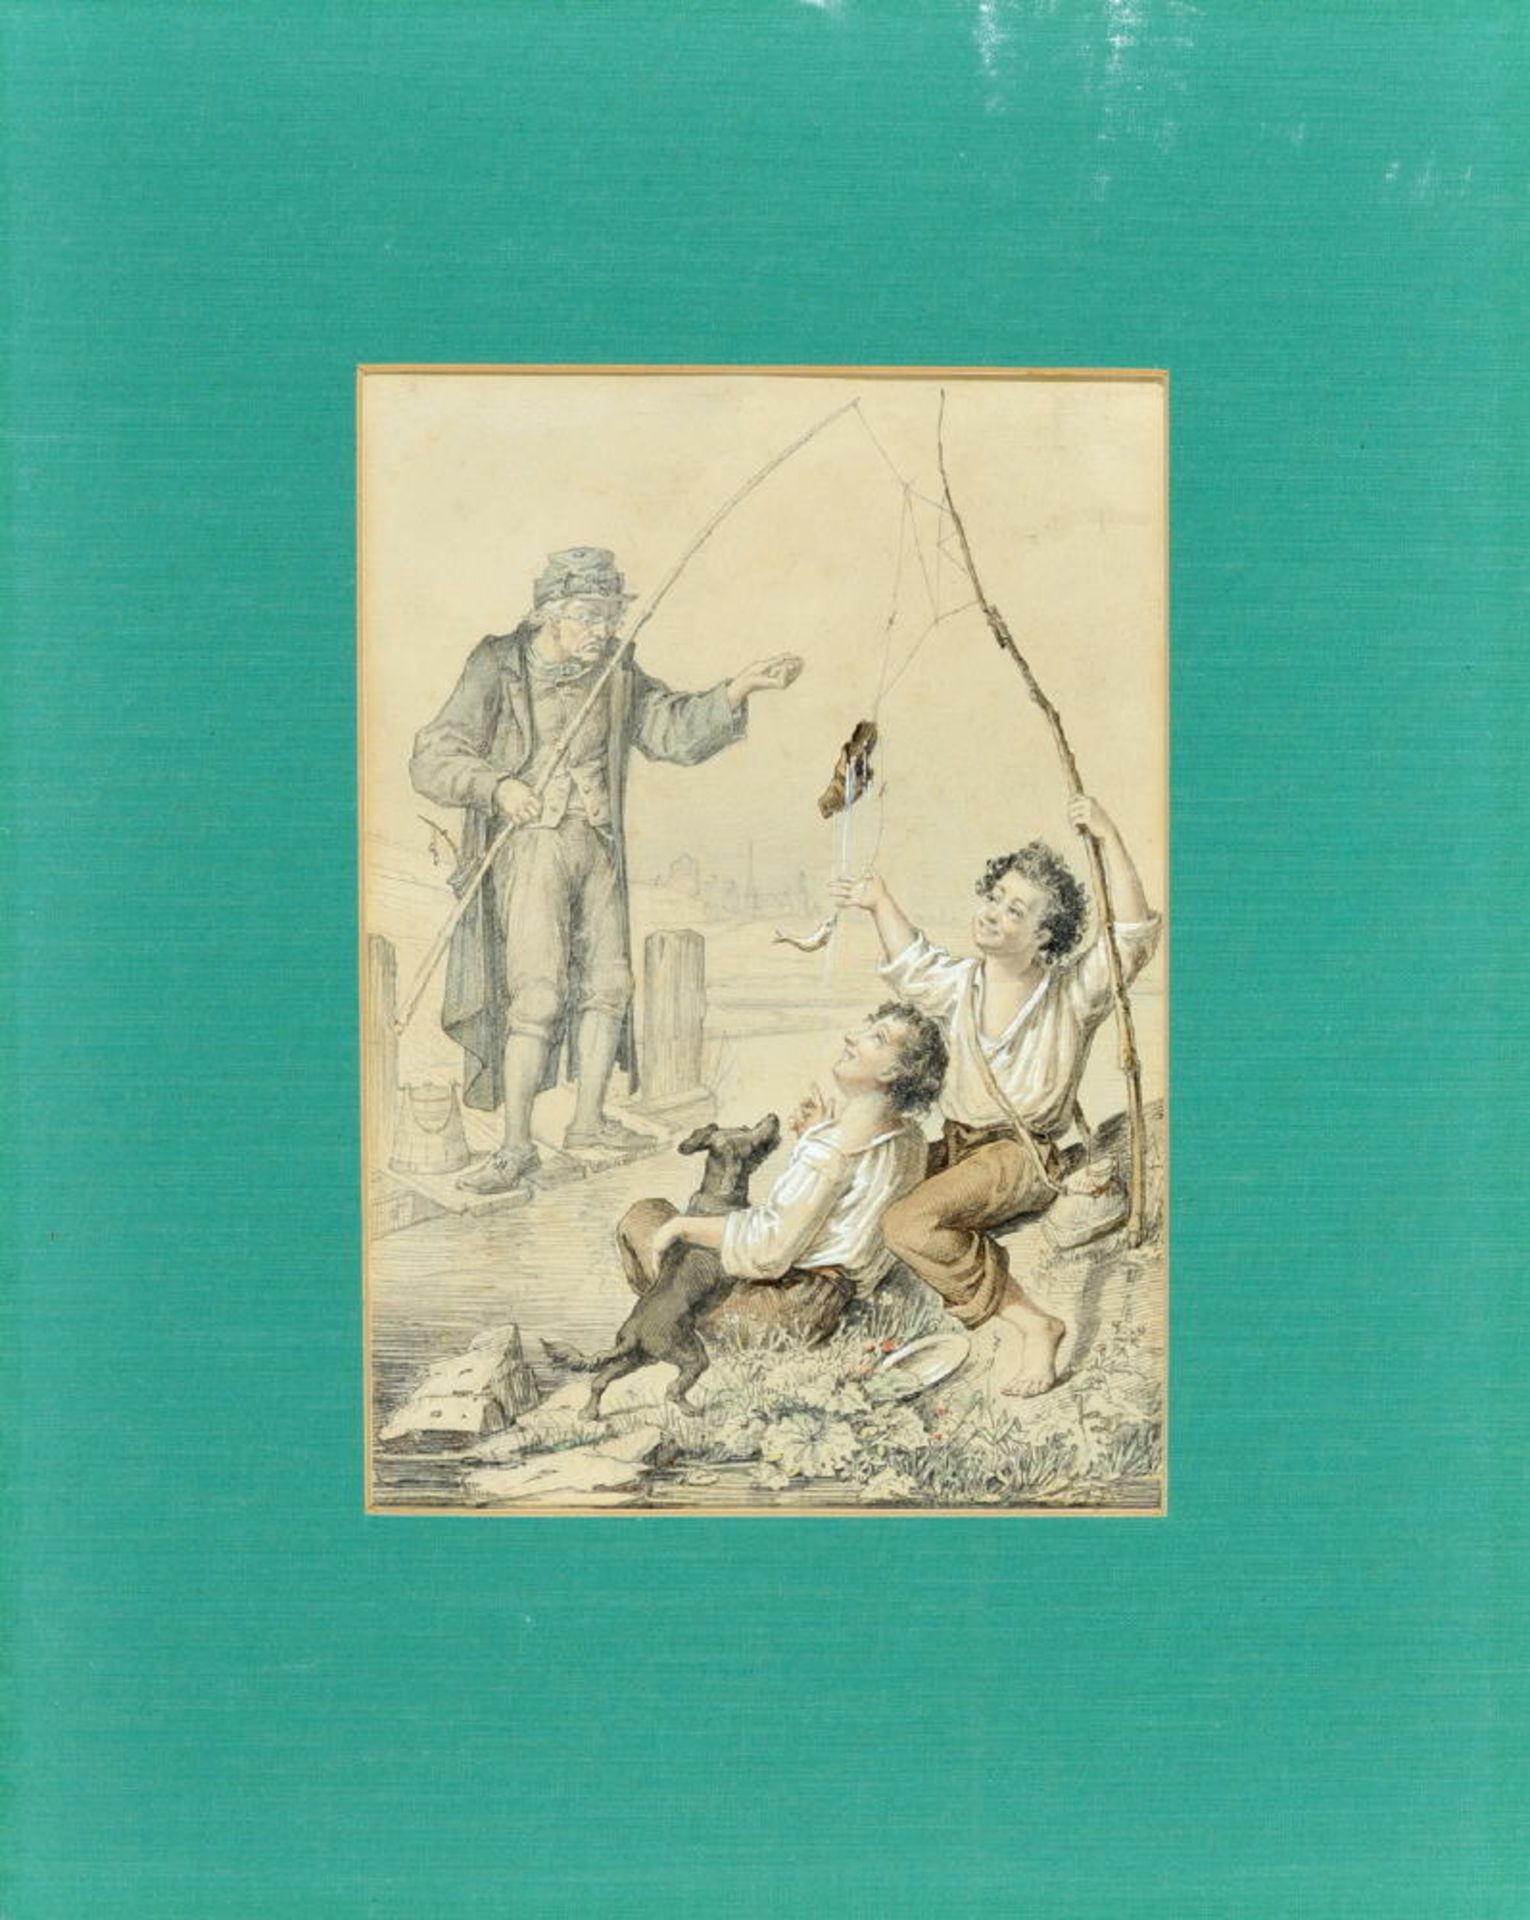 Genremaler des 19. Jh.Bleistiftzeichnung, aquarell., 20,5 x 14,5 cm, " Zwei junge Burschen ärgern